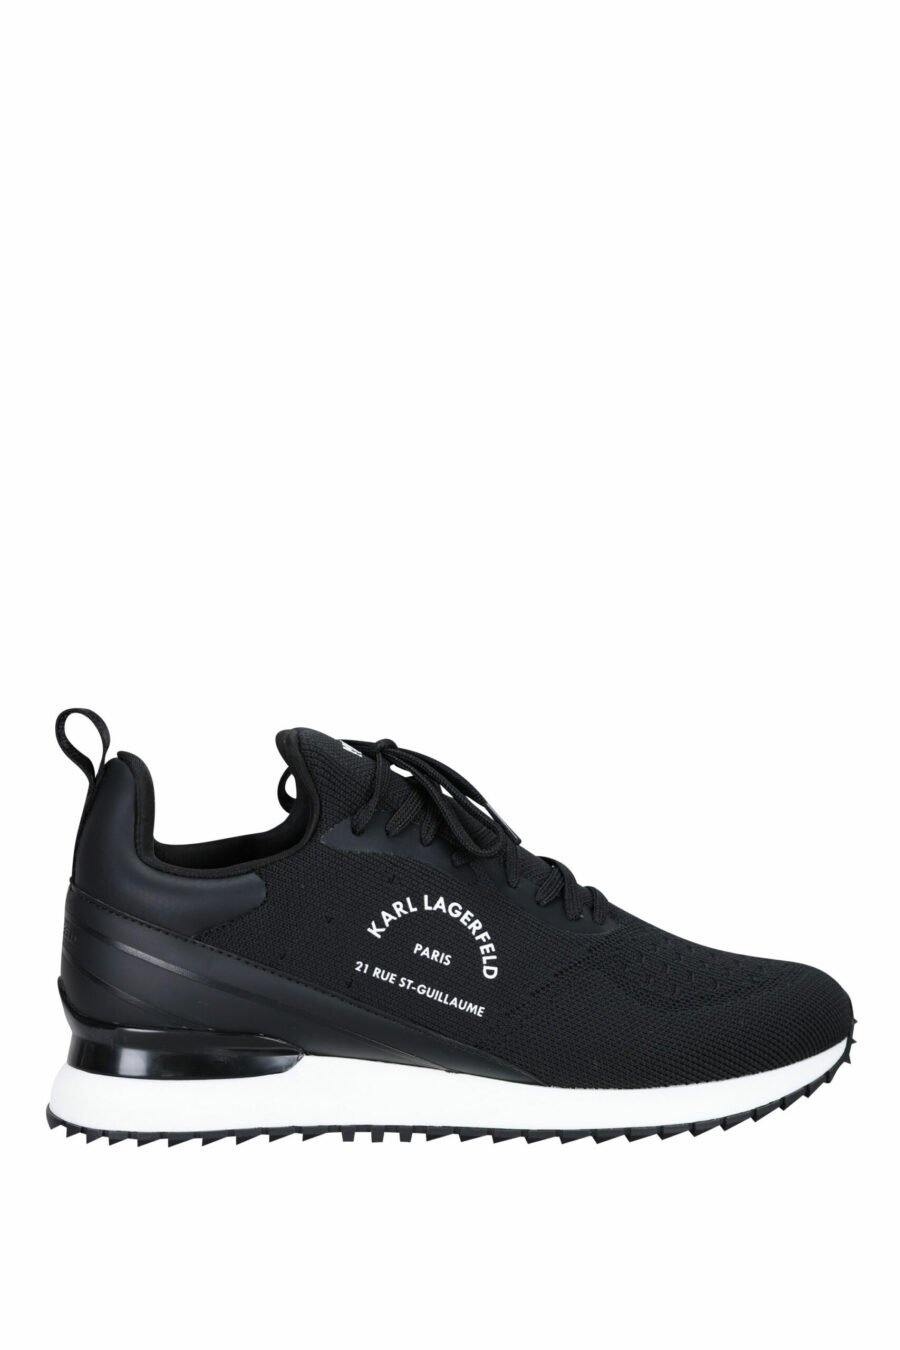 Zapatillas negras "velocitor" con logo "rue st guillaume" blanco - 5059529326370 scaled